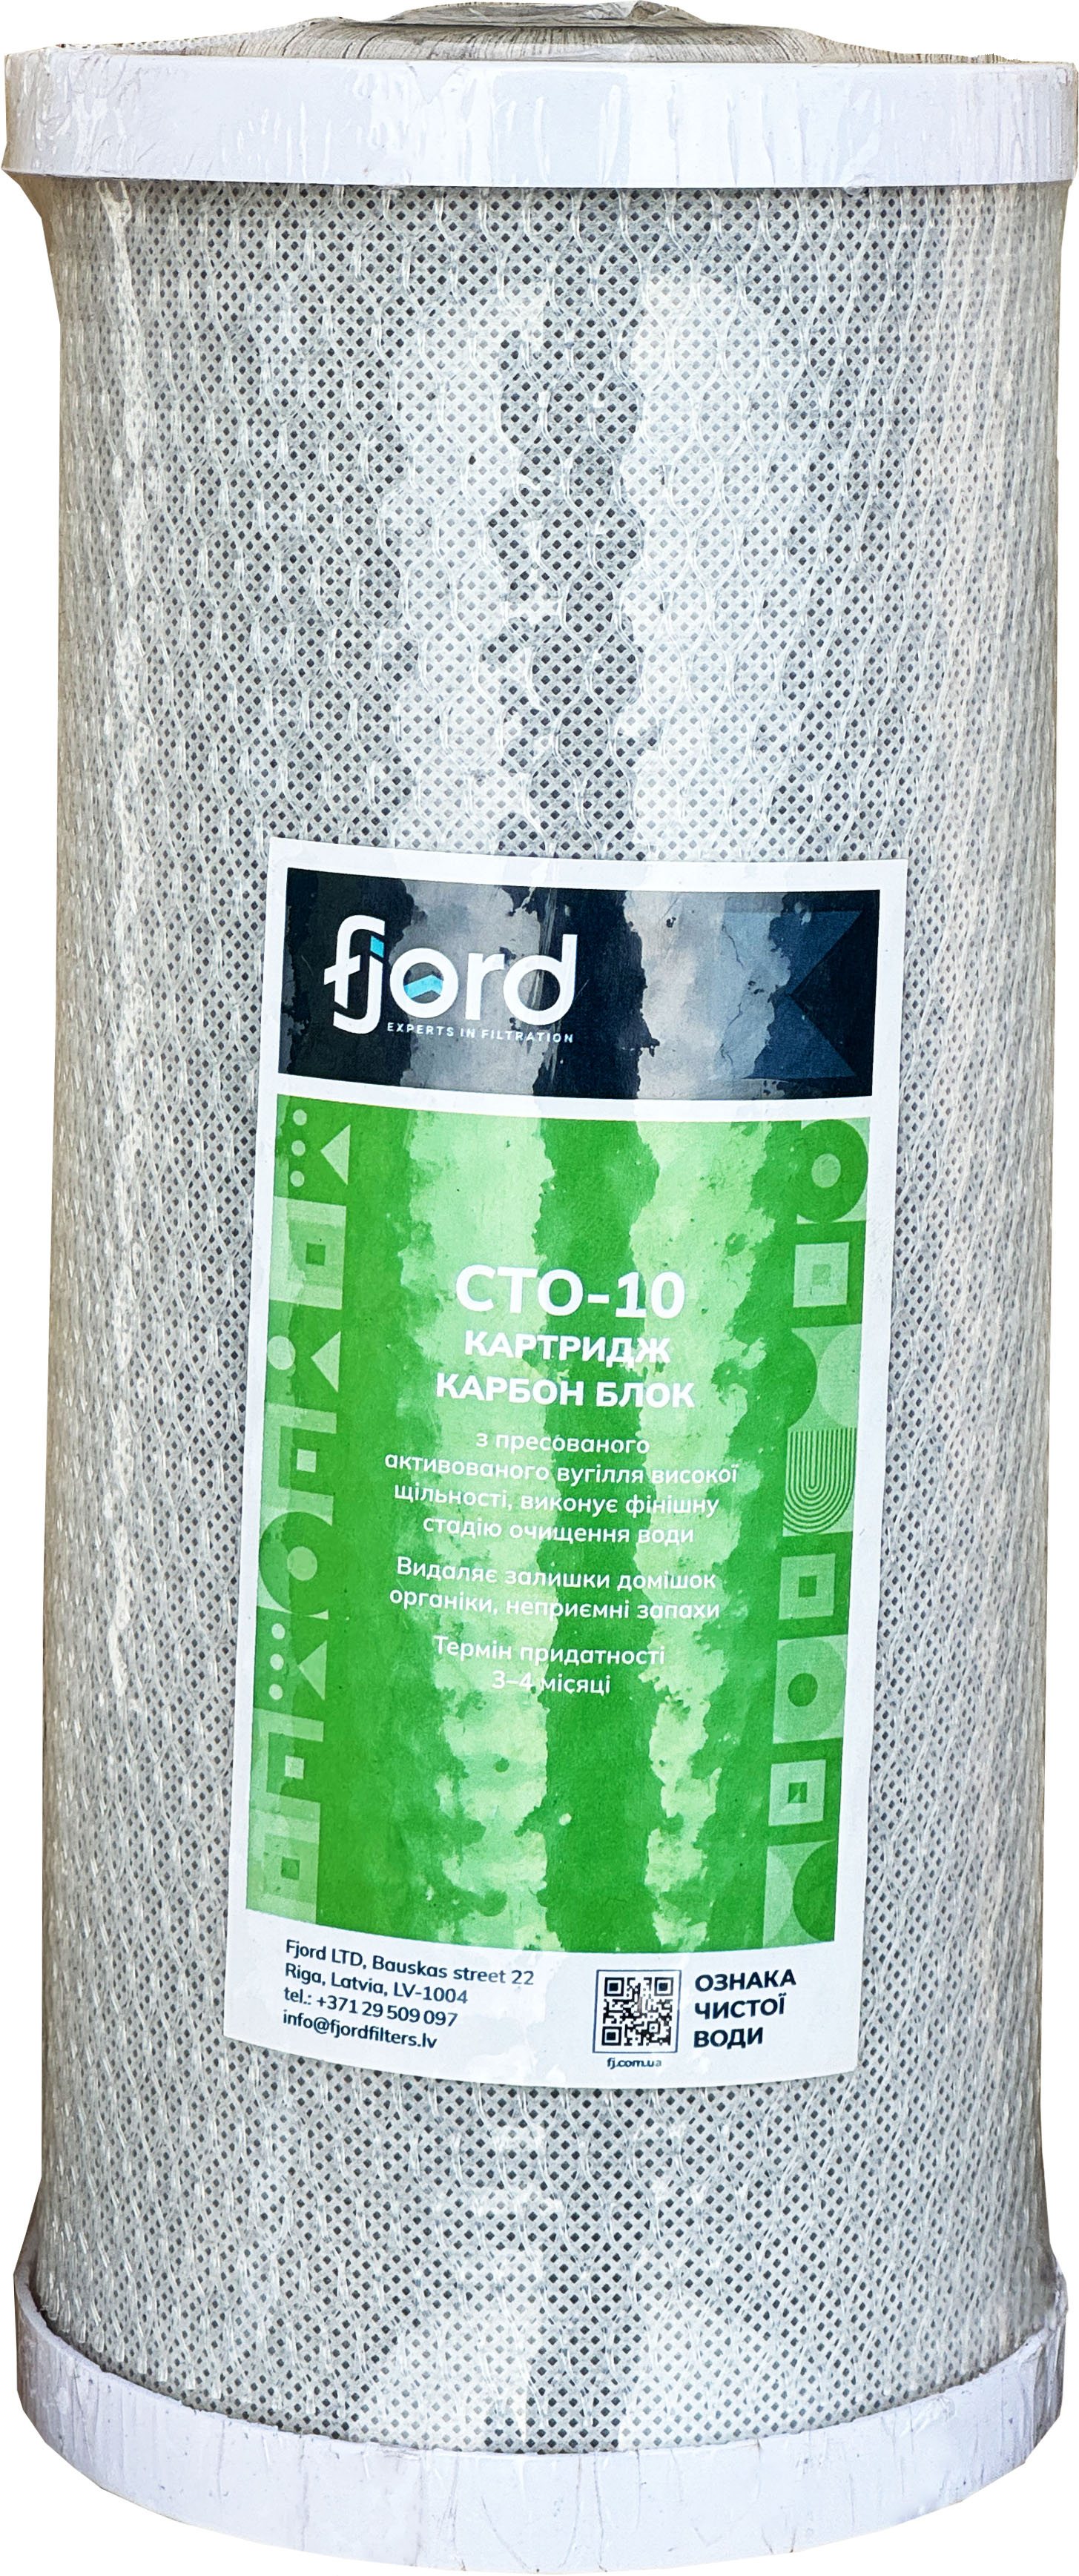 Fjord CTO-BB10 (вугілля)